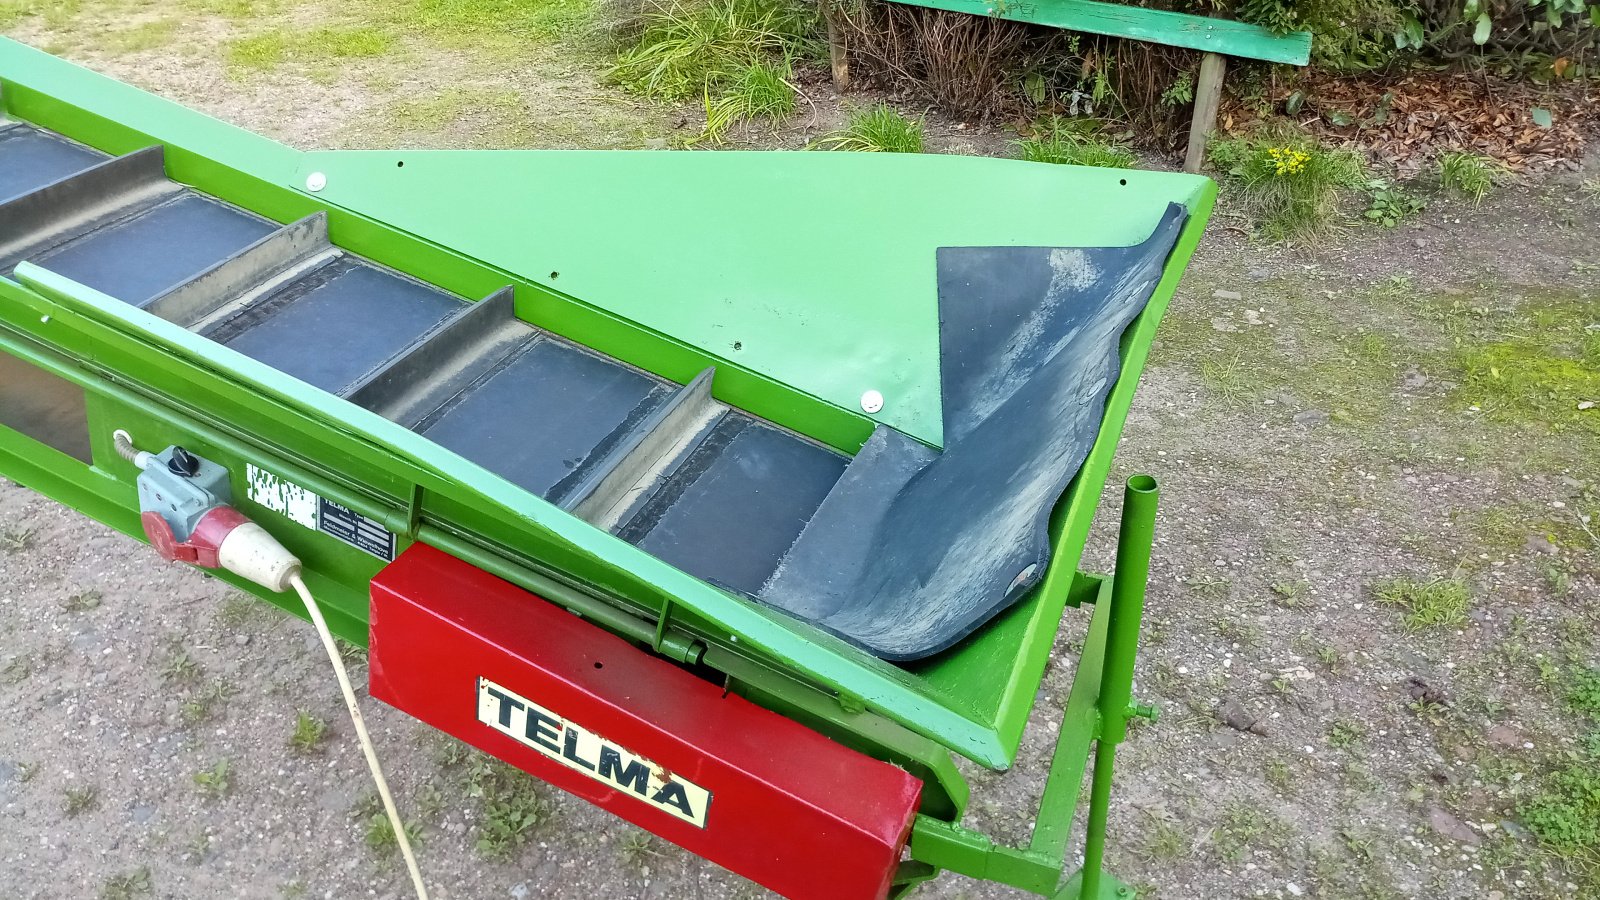 Förderband des Typs Telma Förderband Steilförderband Transportband Gummiförderband, Gebrauchtmaschine in Kaarst (Bild 2)